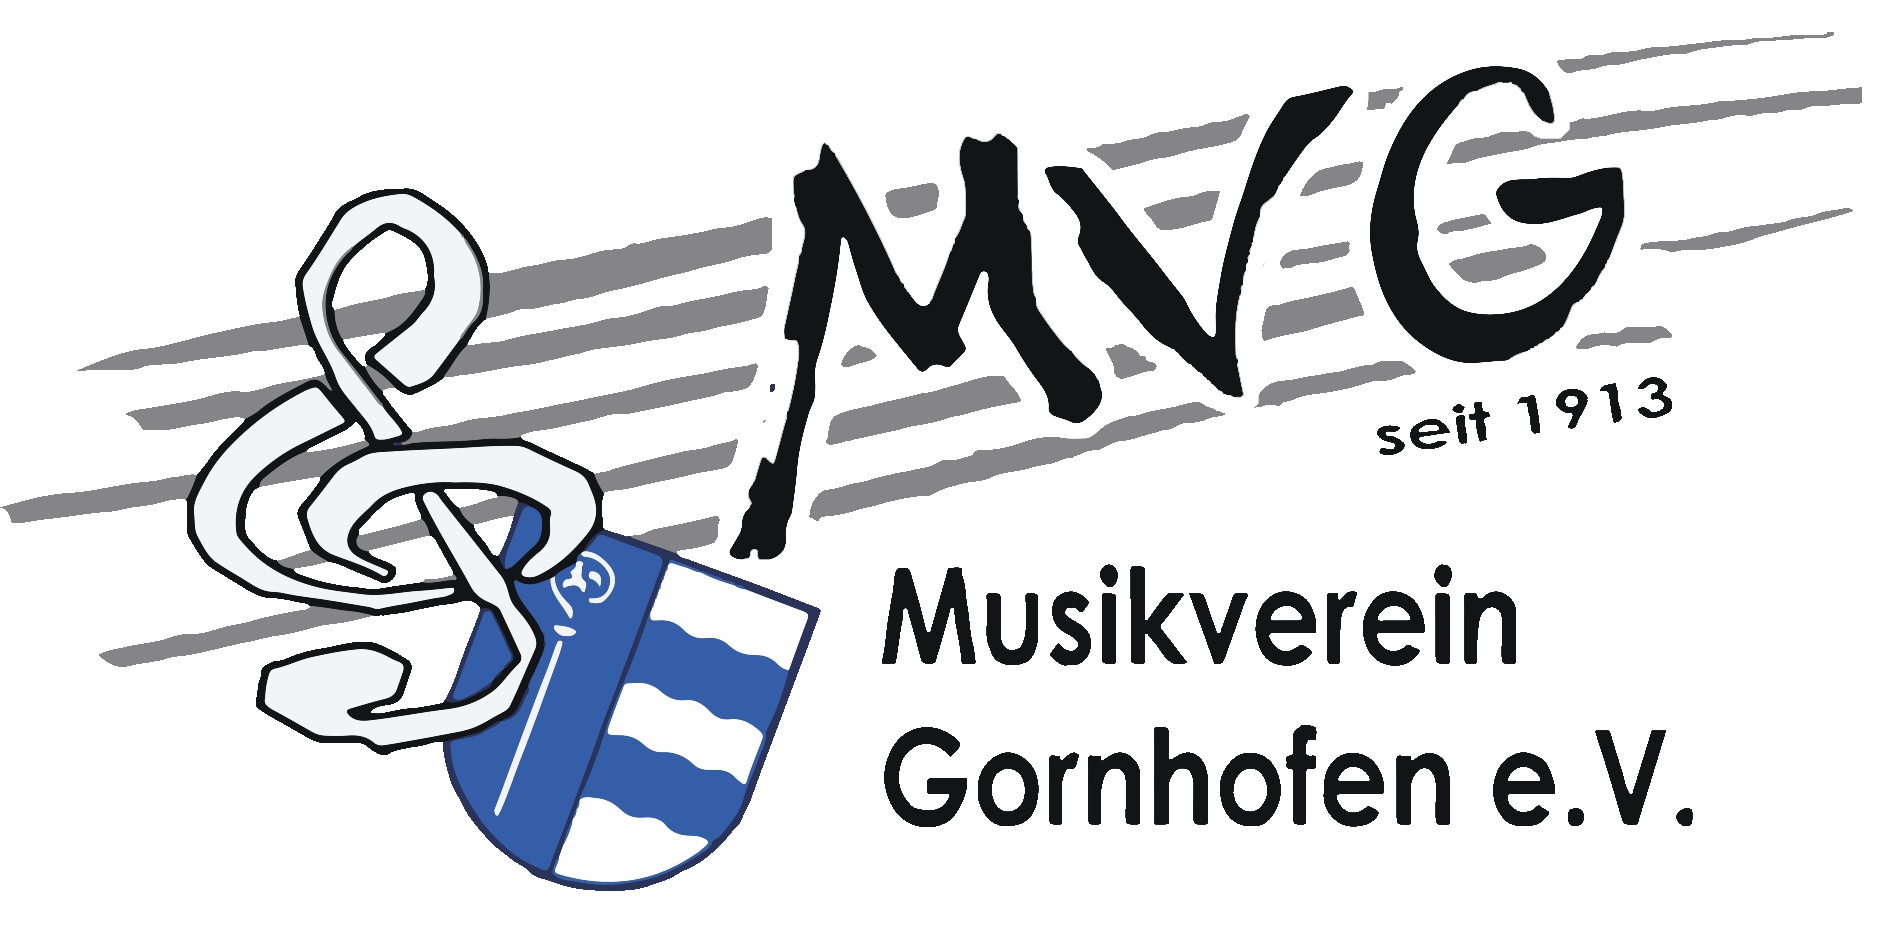 Musikverein Gornhofen e.V.